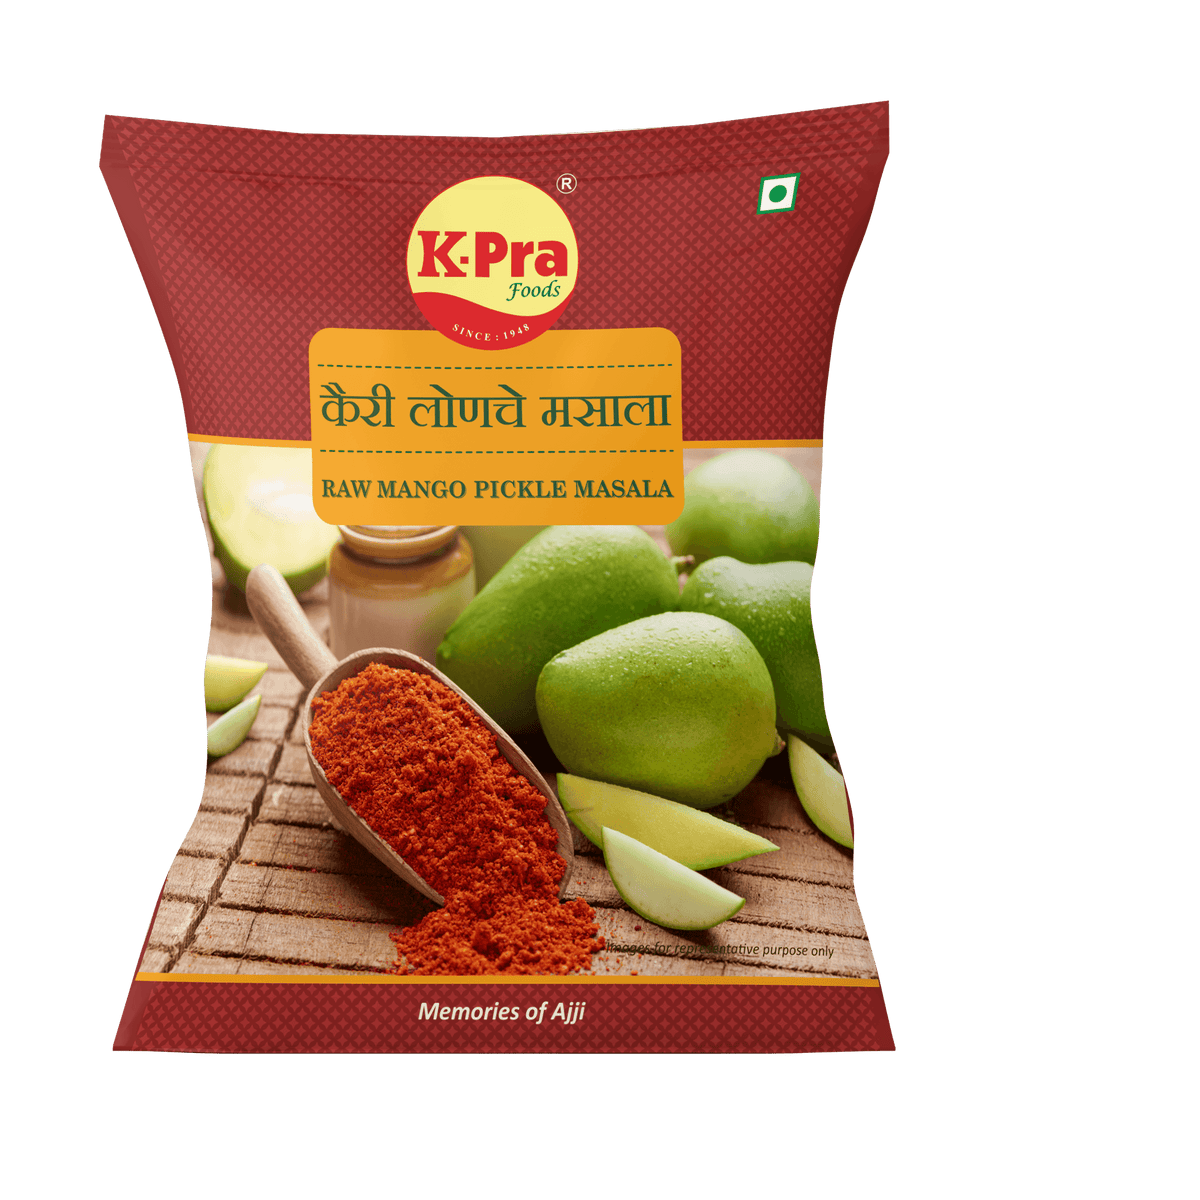 MANGO / KAIRI PICKLE MASALA - Kpra Foods Pvt. Ltd.